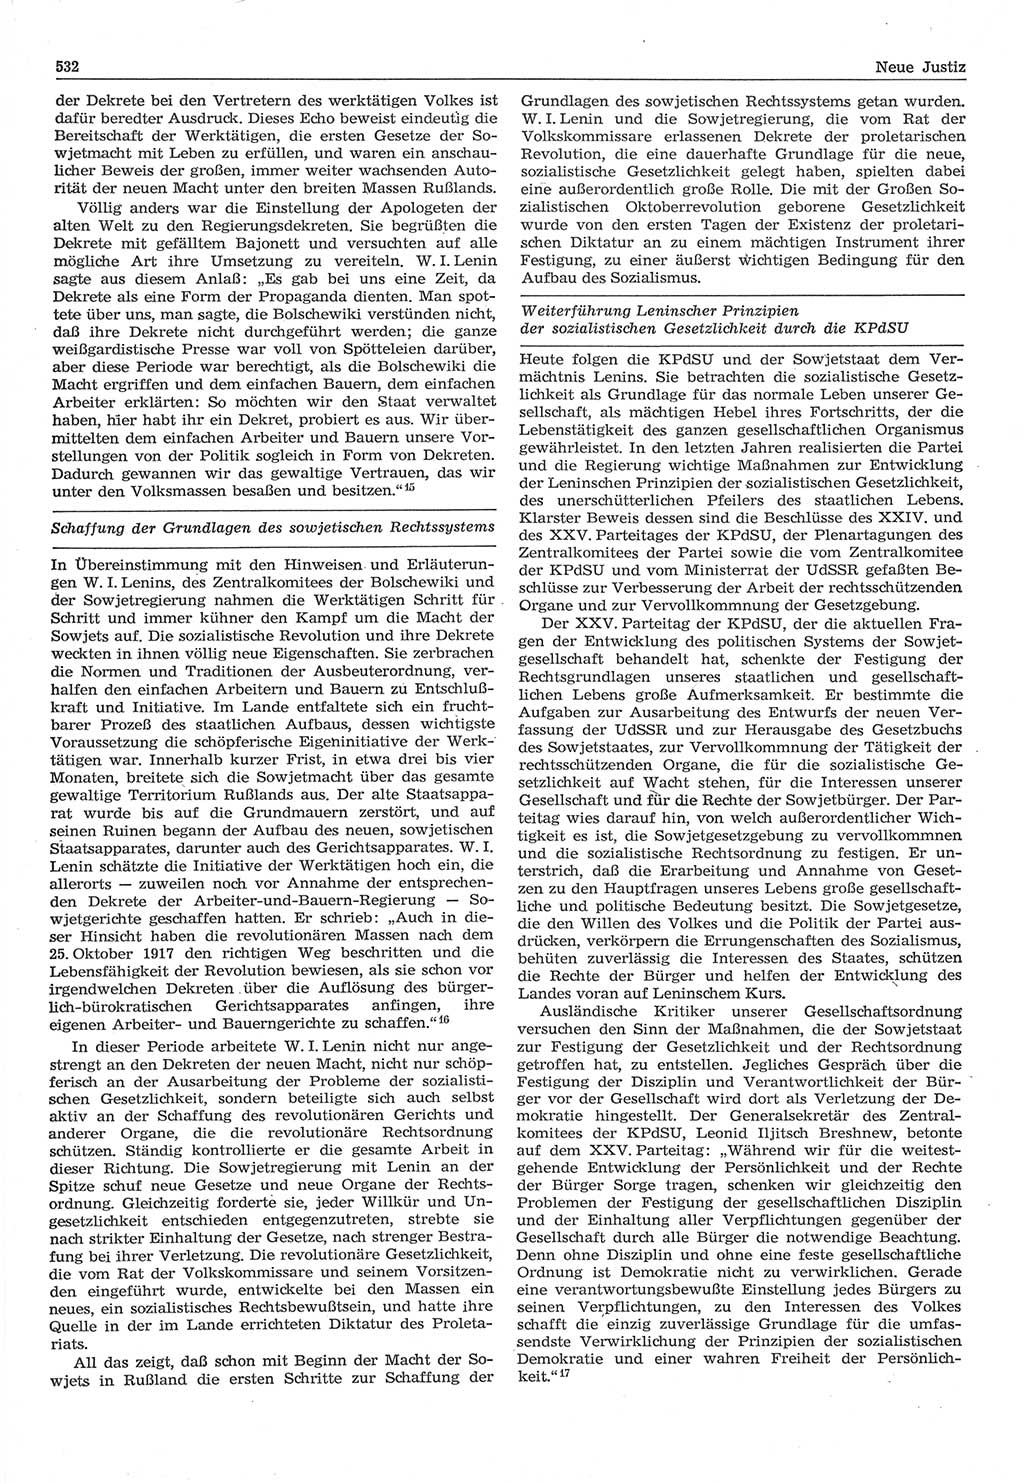 Neue Justiz (NJ), Zeitschrift für Recht und Rechtswissenschaft-Zeitschrift, sozialistisches Recht und Gesetzlichkeit, 31. Jahrgang 1977, Seite 532 (NJ DDR 1977, S. 532)